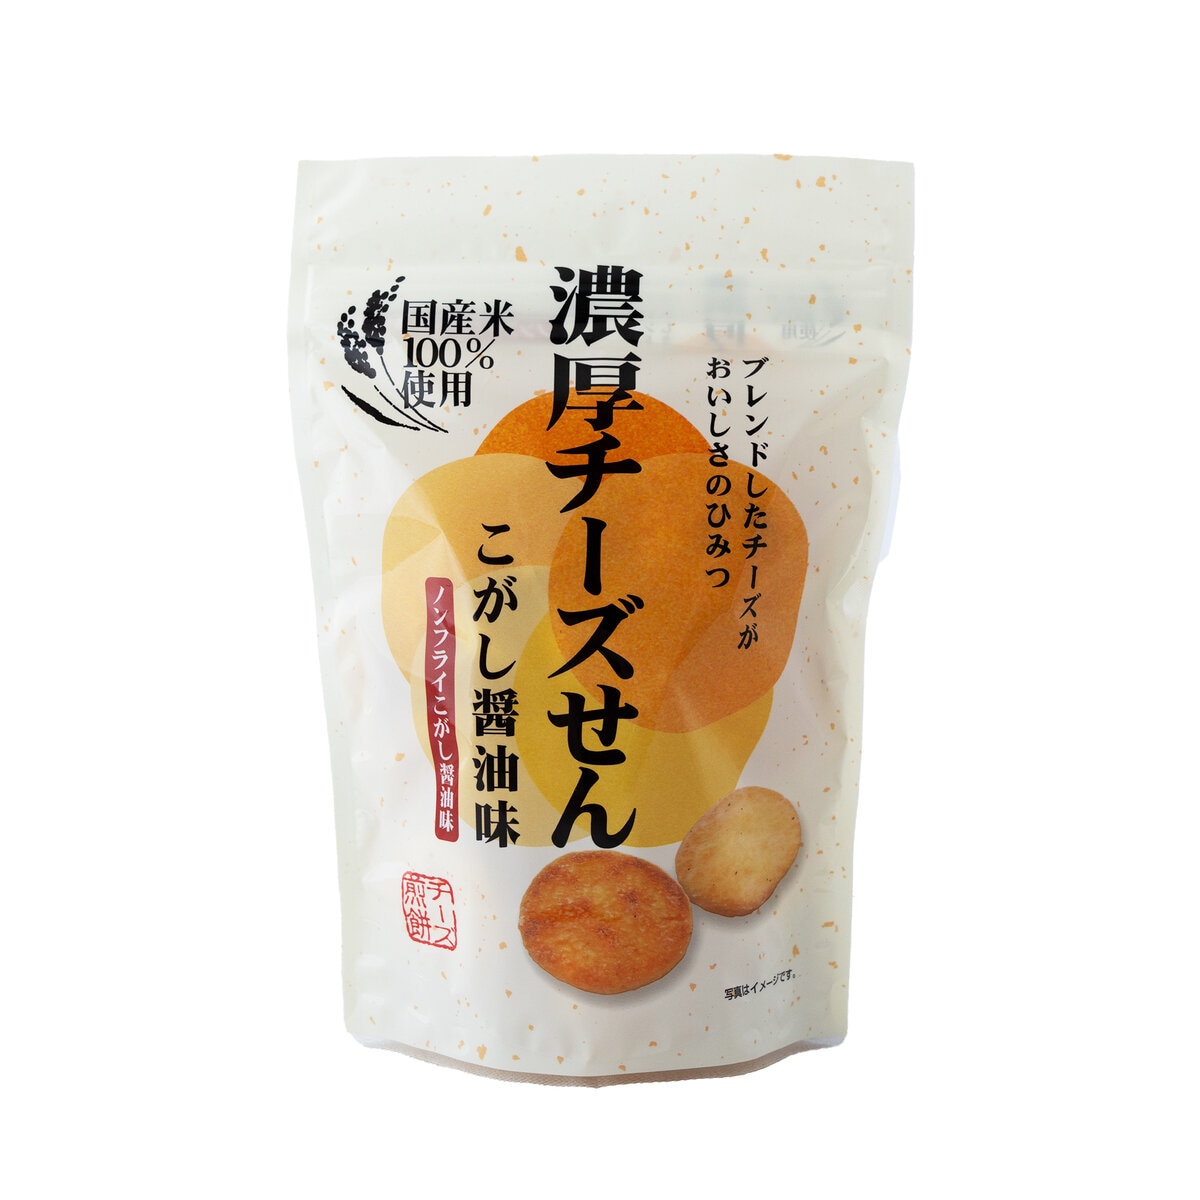 関口醸造 濃厚チーズせん こがし醤油味 65g x 12袋 | Costco Japan